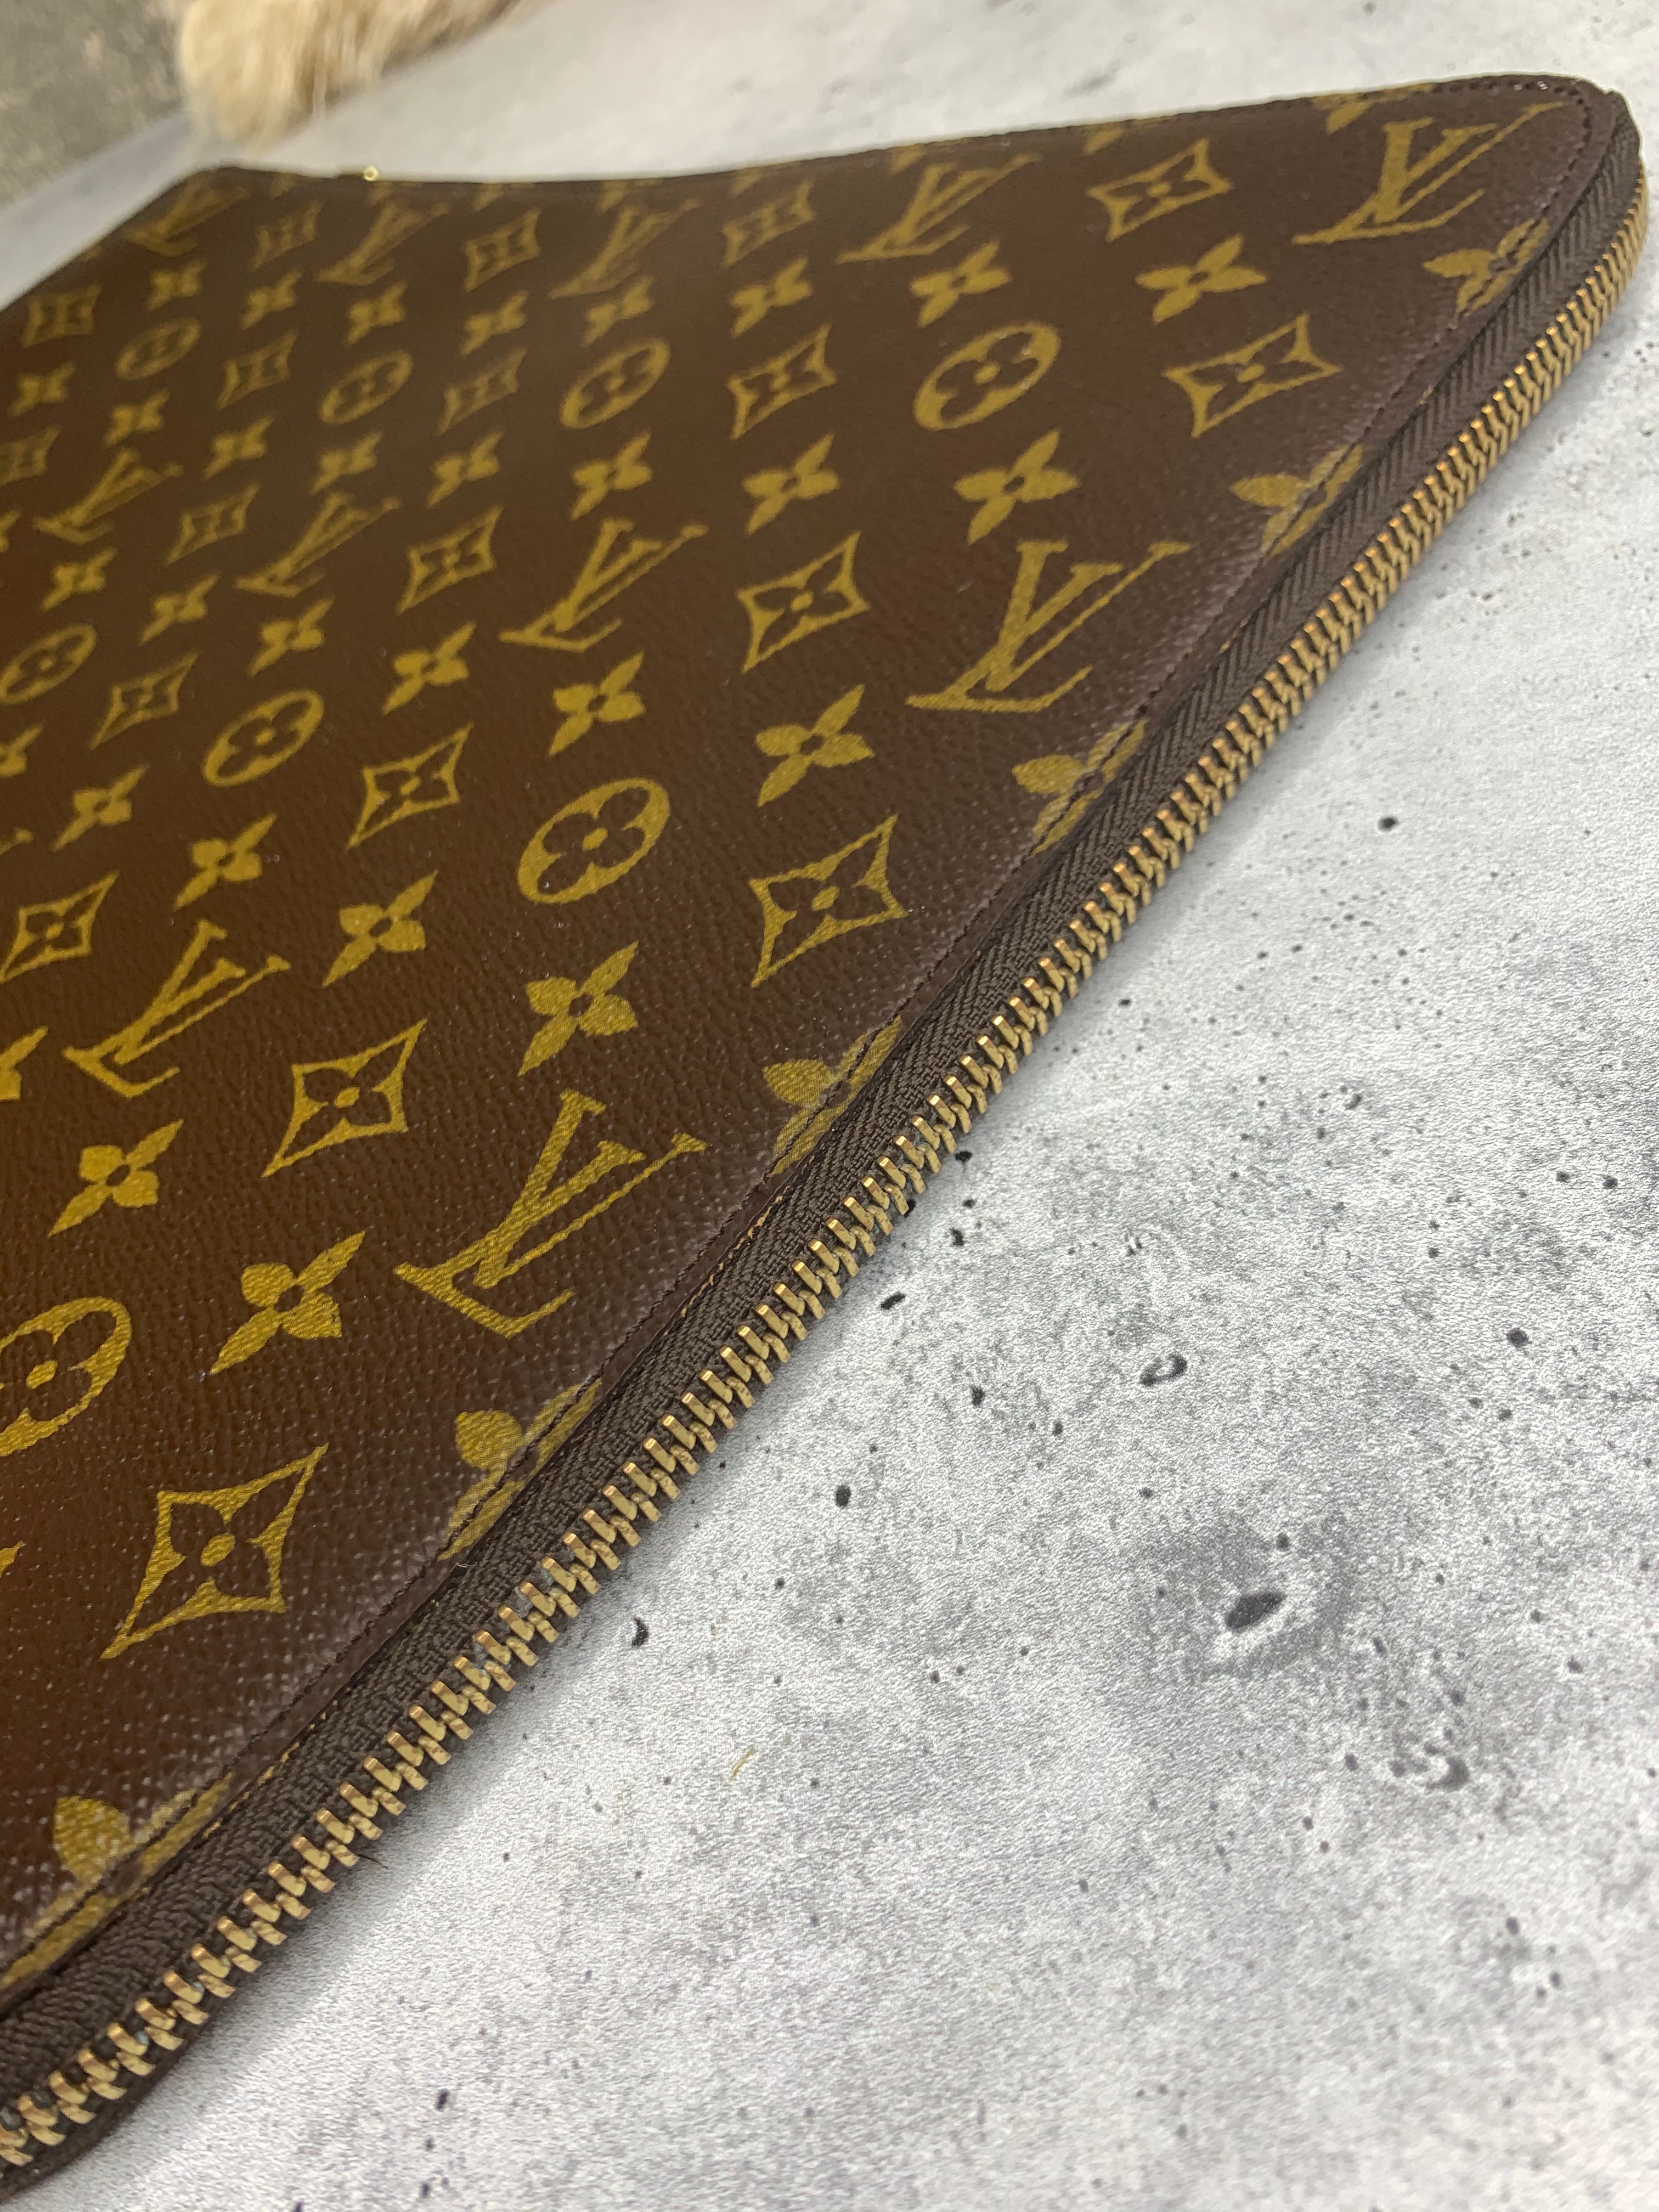 Shop for Louis Vuitton Monogram Canvas Leather Poche Document